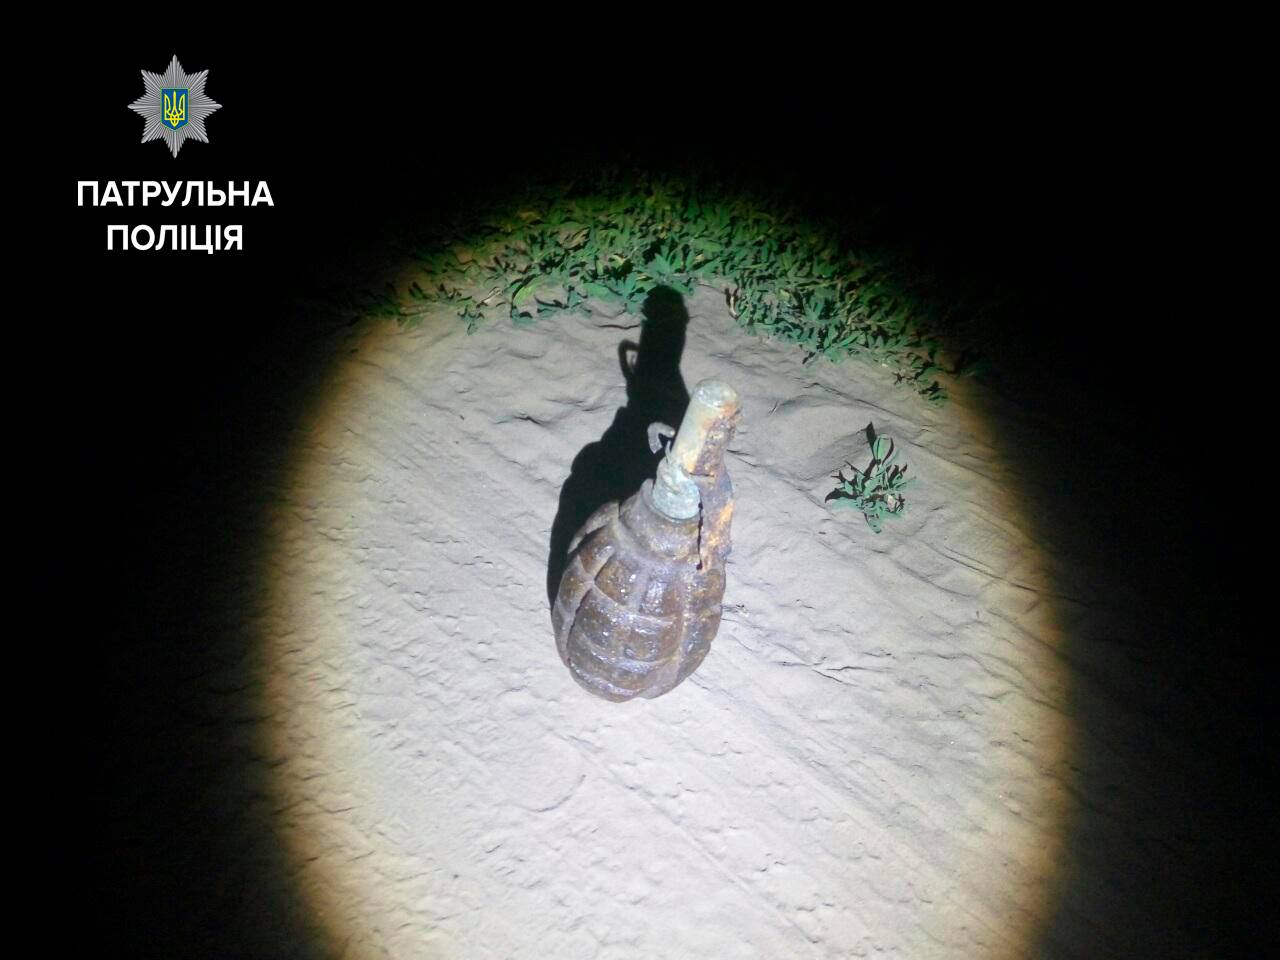 Запорожцы обнаружили гранату на дороге в Днепровском районе